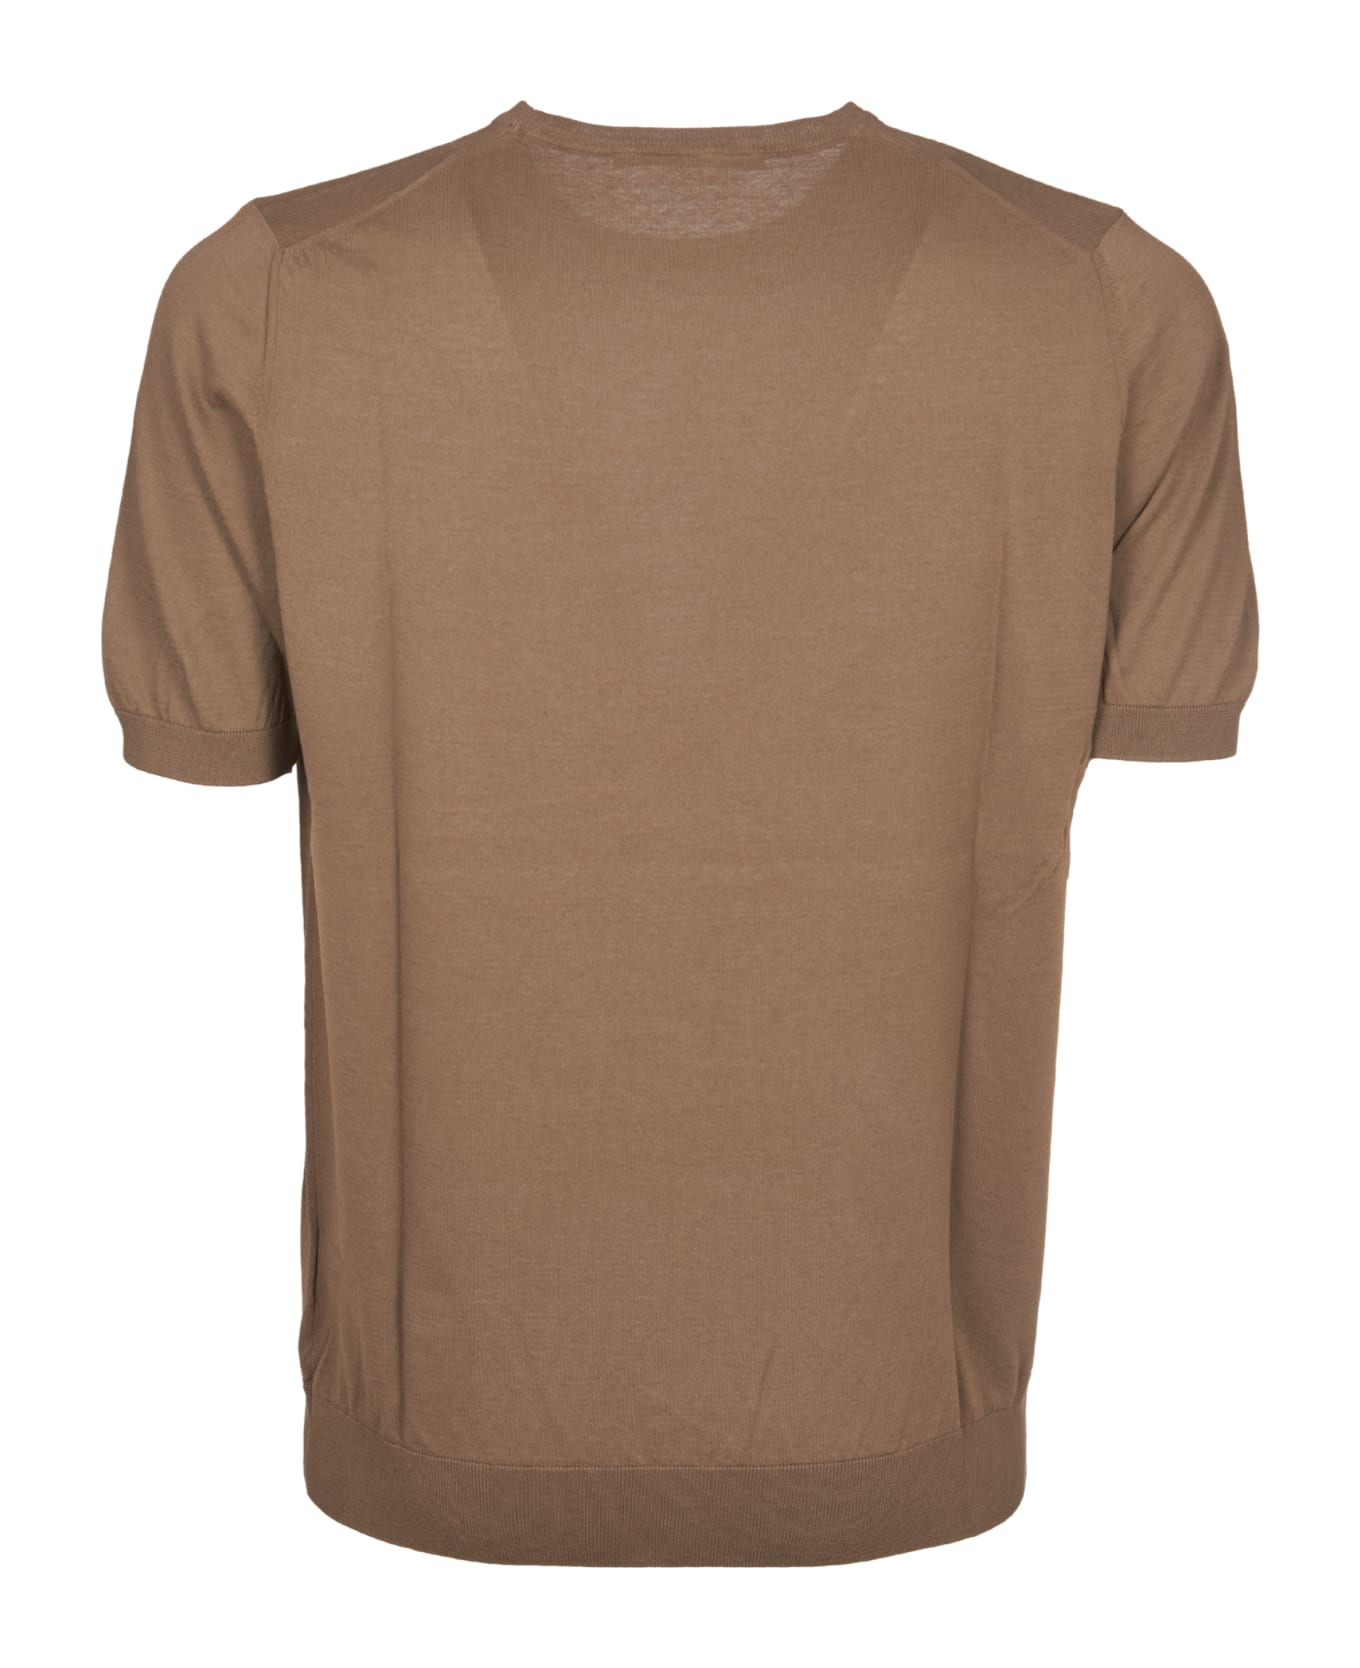 Tagliatore T-shirt - Brown シャツ